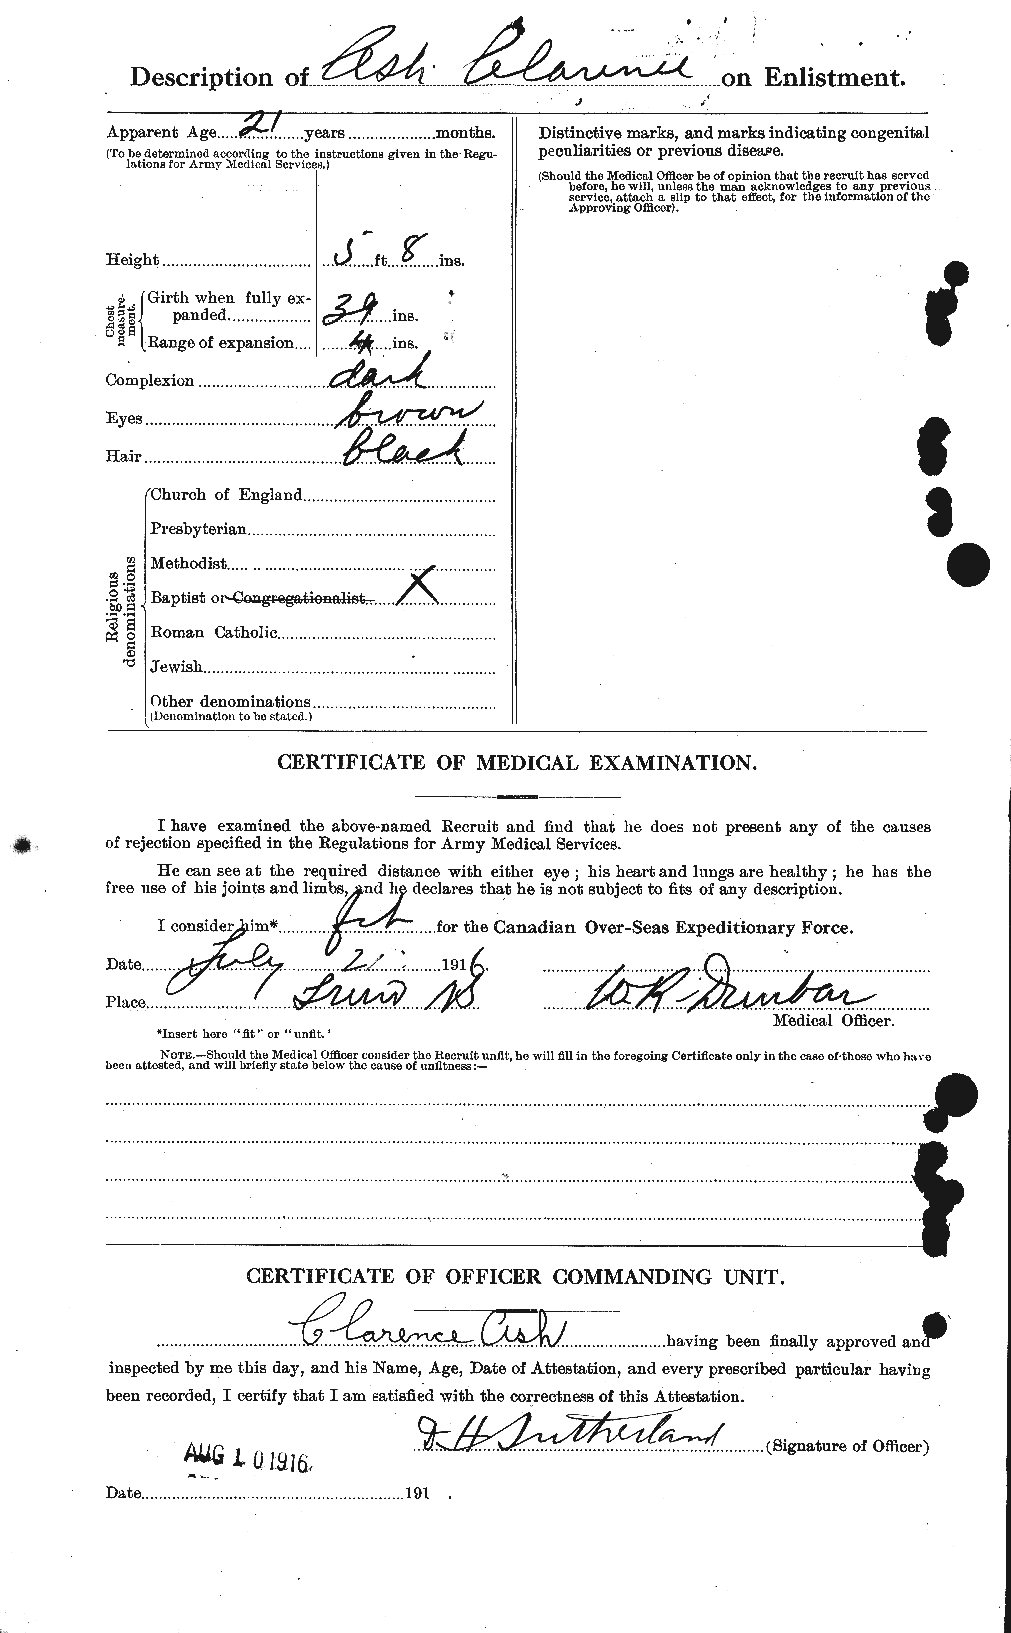 Dossiers du Personnel de la Première Guerre mondiale - CEC 214644b